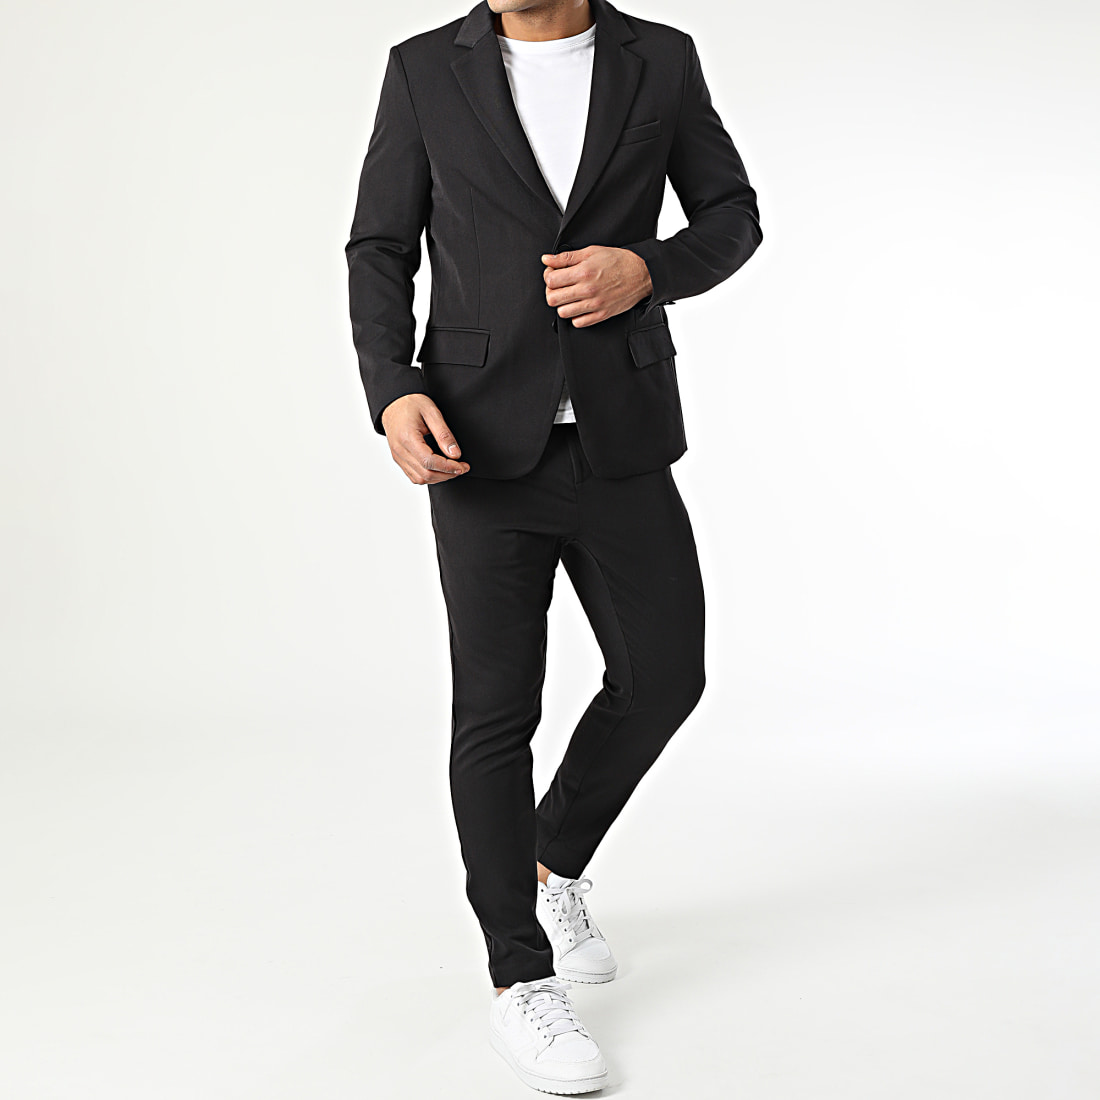 Ensemble veste et pantalon noir homme fashion – ILANNFIVE